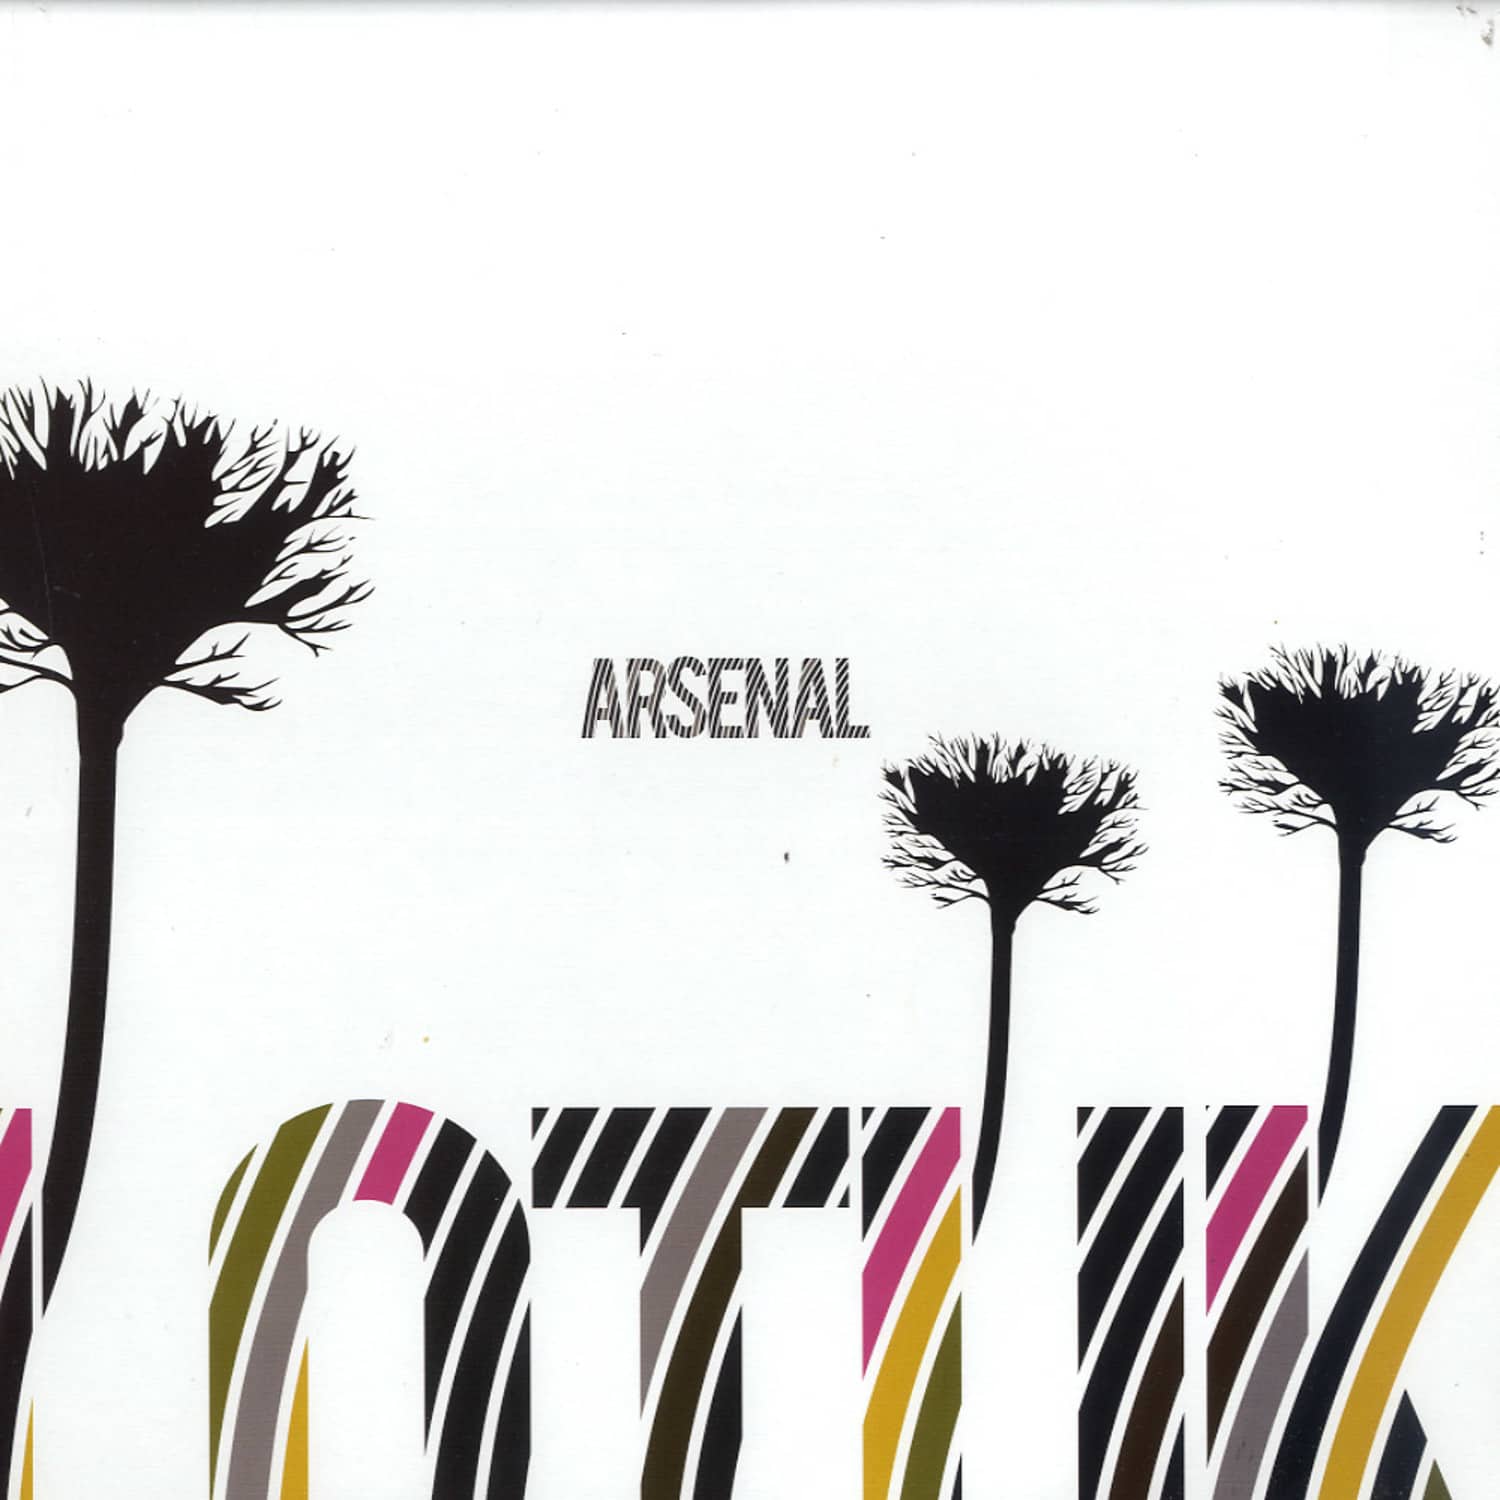 Arsenal - LOTUK EP